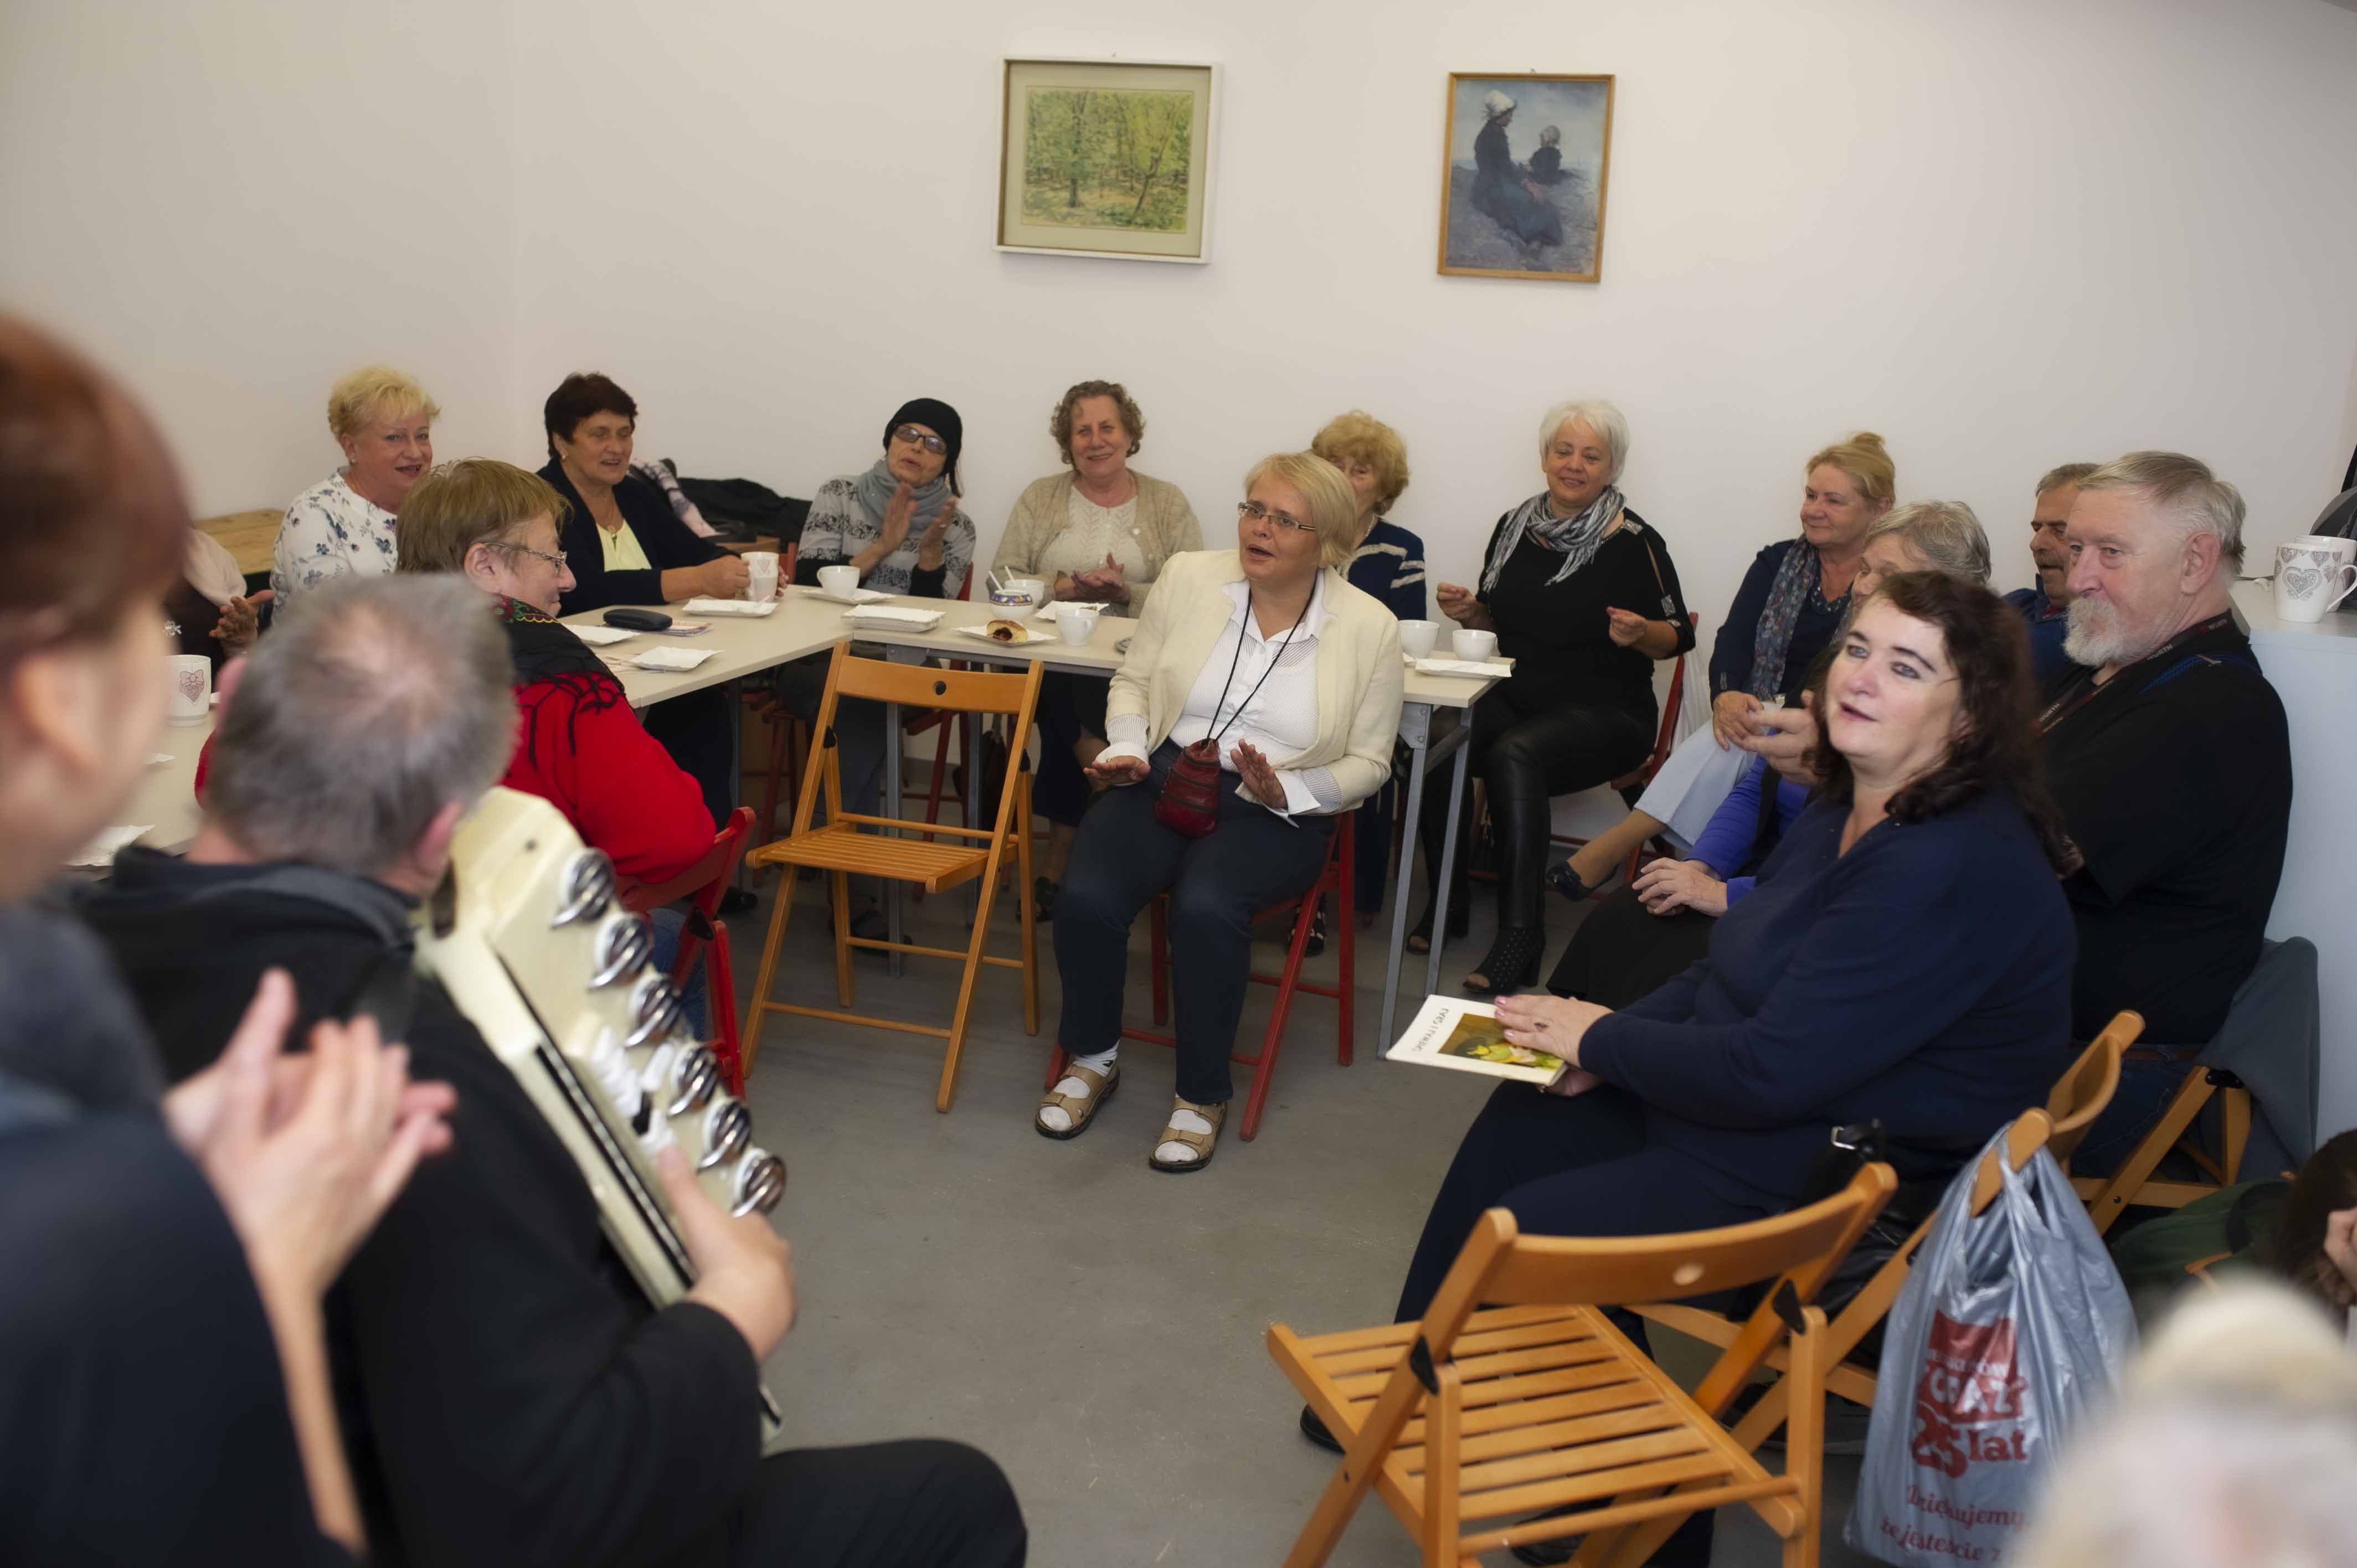 Podwieczorek przy akordeonie w Szopie Dobrych Pomysłów działającej przy domu kultury. Zdjęcie przedstawia grupę śpiewających seniorów, którzy siedzą dookoła pomieszczenia. Po lewej stronie zdjęcia tyłem do aparatu, a przodem do publiczności siedzi muzyk grający na akordeonie. Panuje radosna atmosfera.